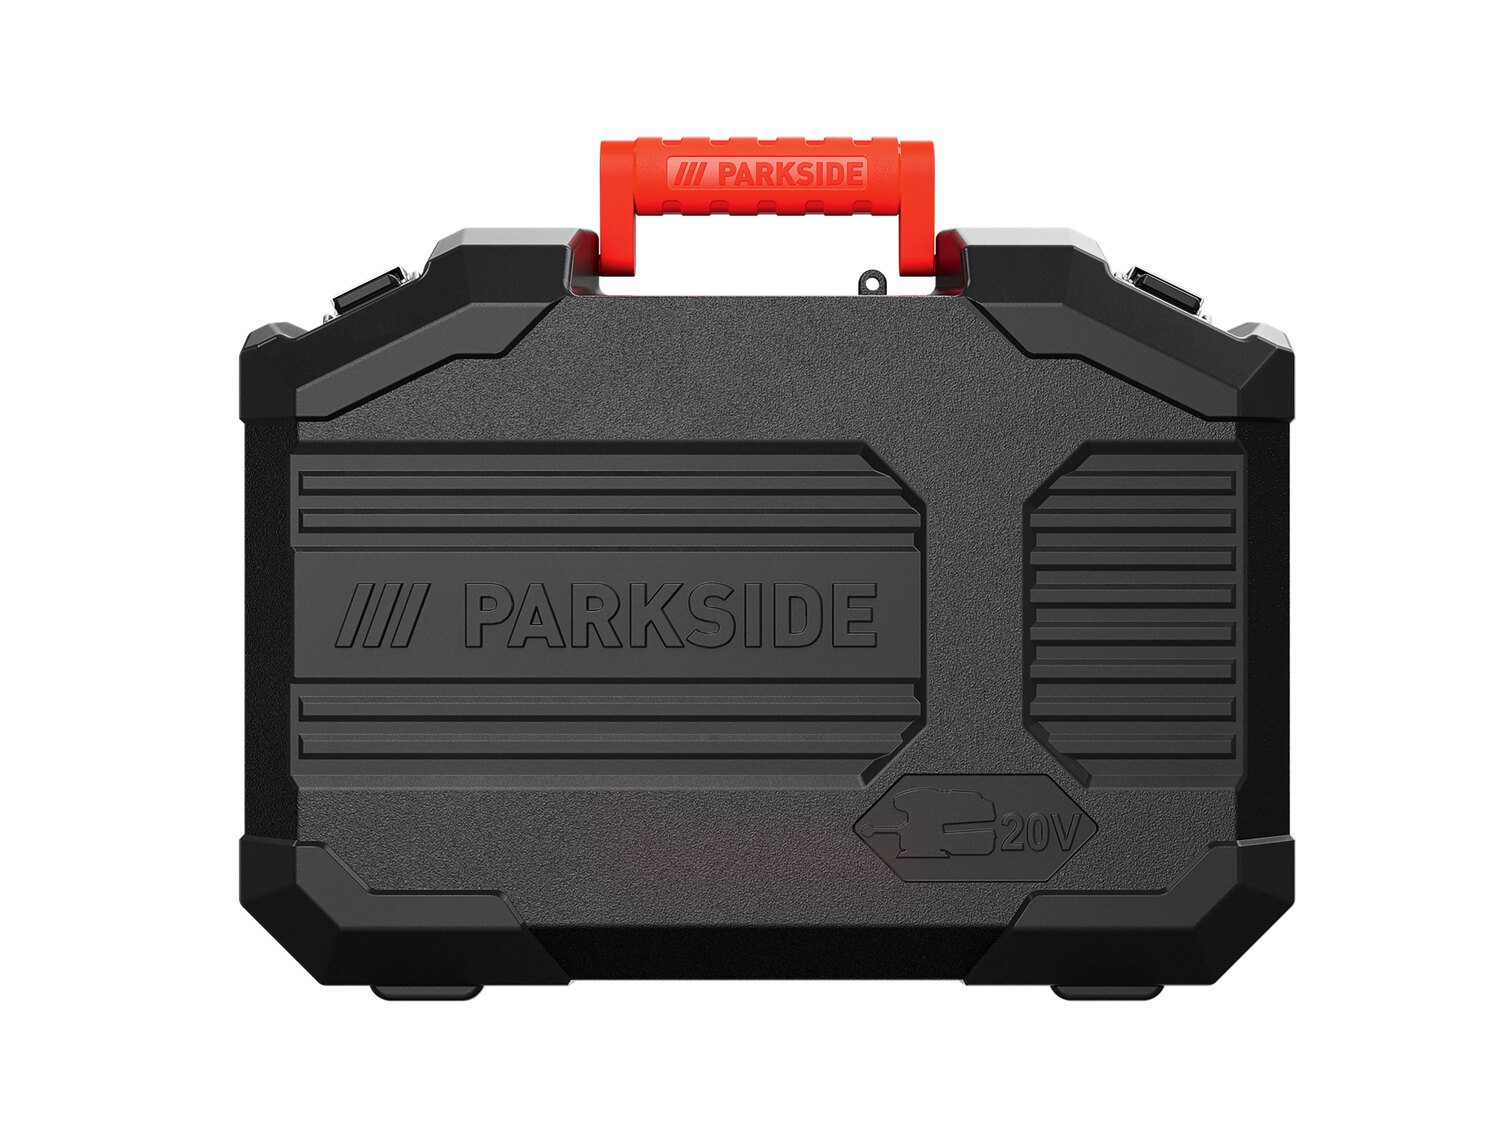 Akumulatorowa szlifierka mimośrodowa Parkside, X20VTeam20 V , cena 119,00 PLN 
- ...